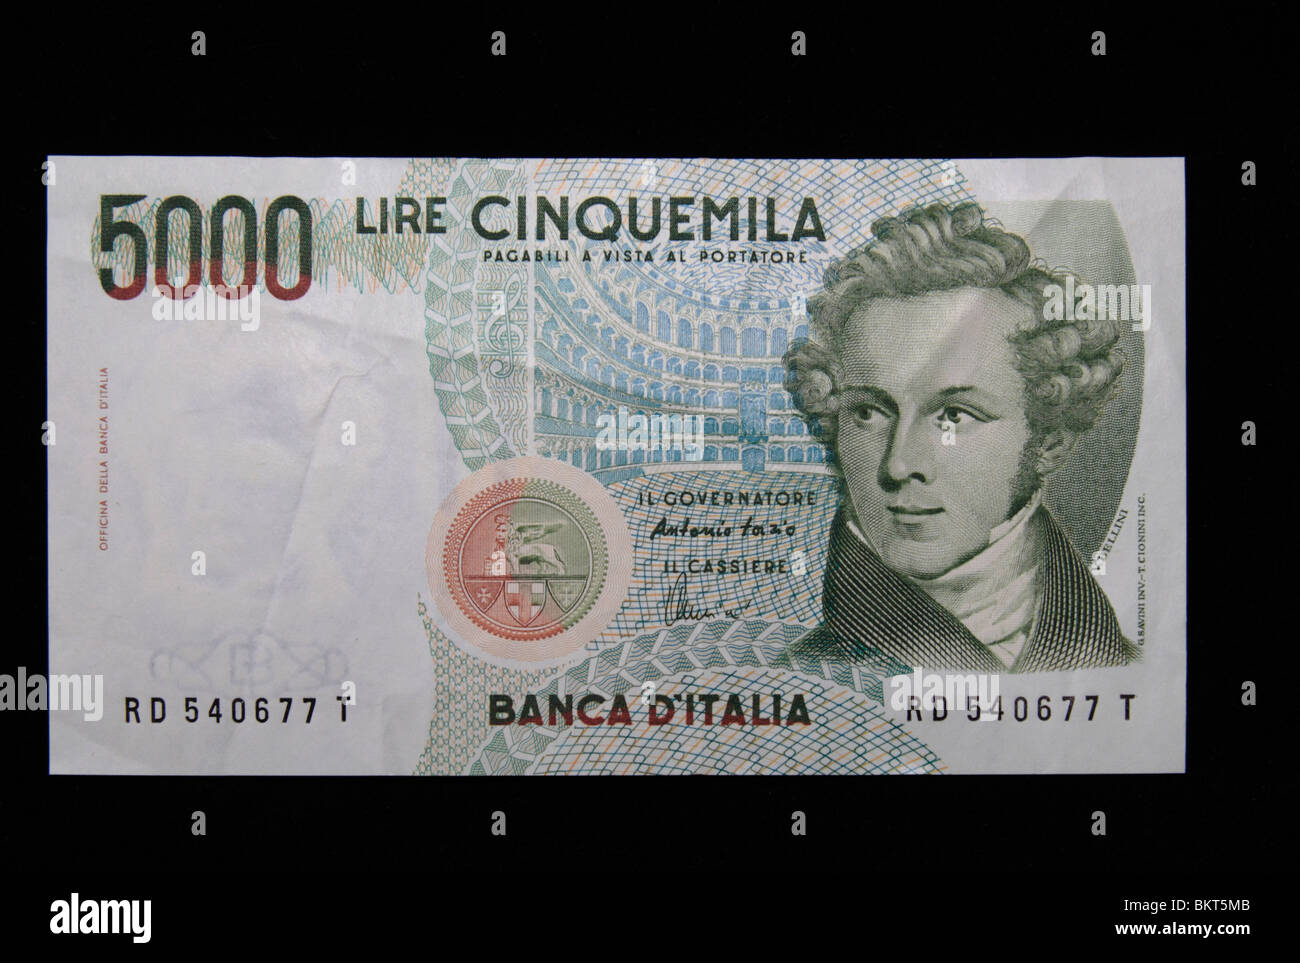 Vue d'une (5 000) Cinquemila Lire italienne (billets remplacés par l'euro en 2002) sur un fond noir. Banque D'Images